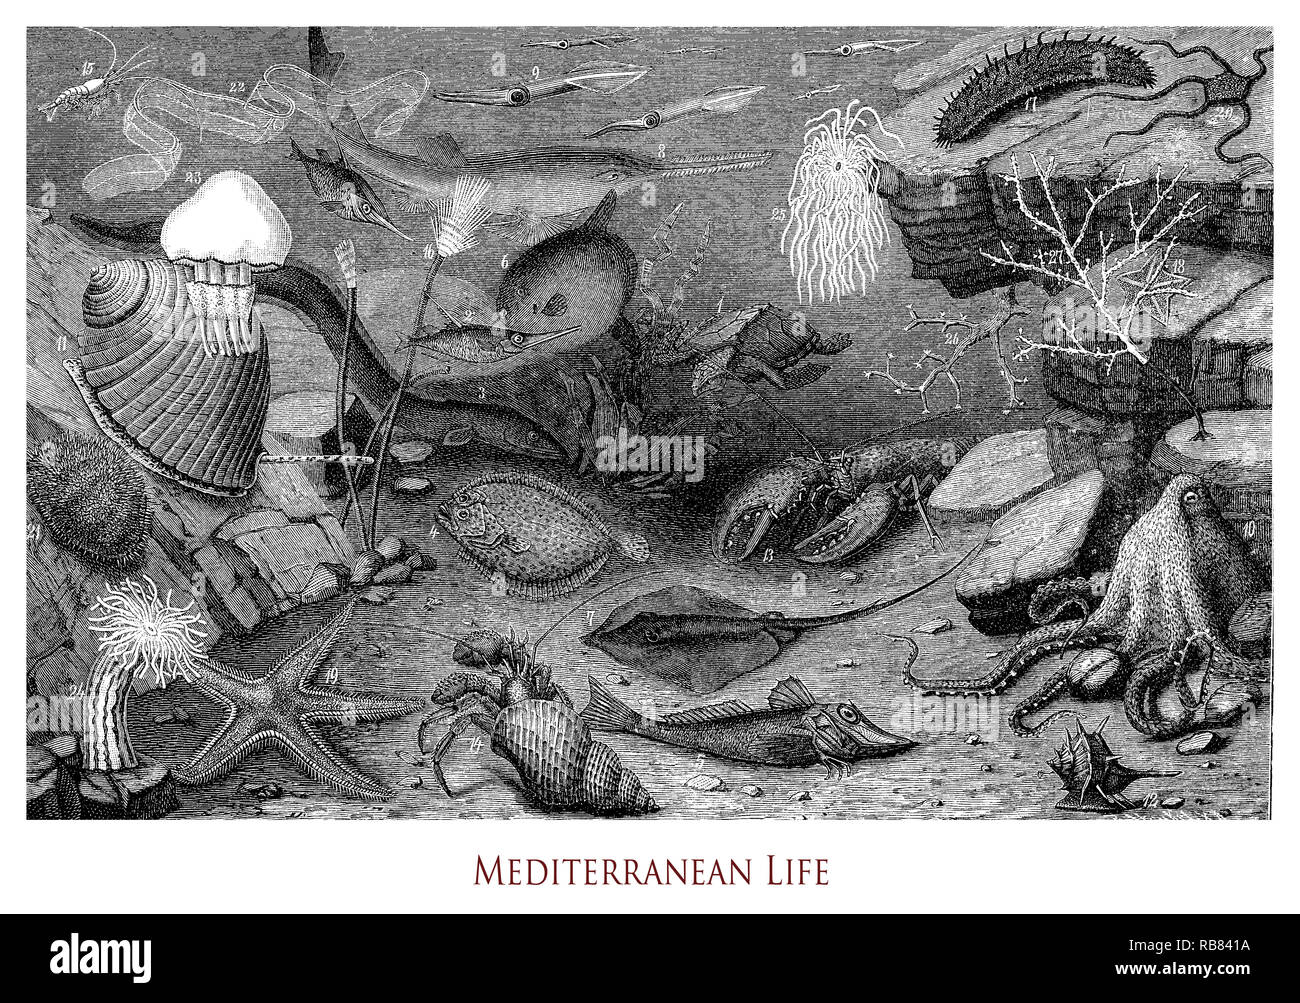 Vintage grabado de la vida biológica submarina del Mediterráneo, la flora y la zoología marina Foto de stock